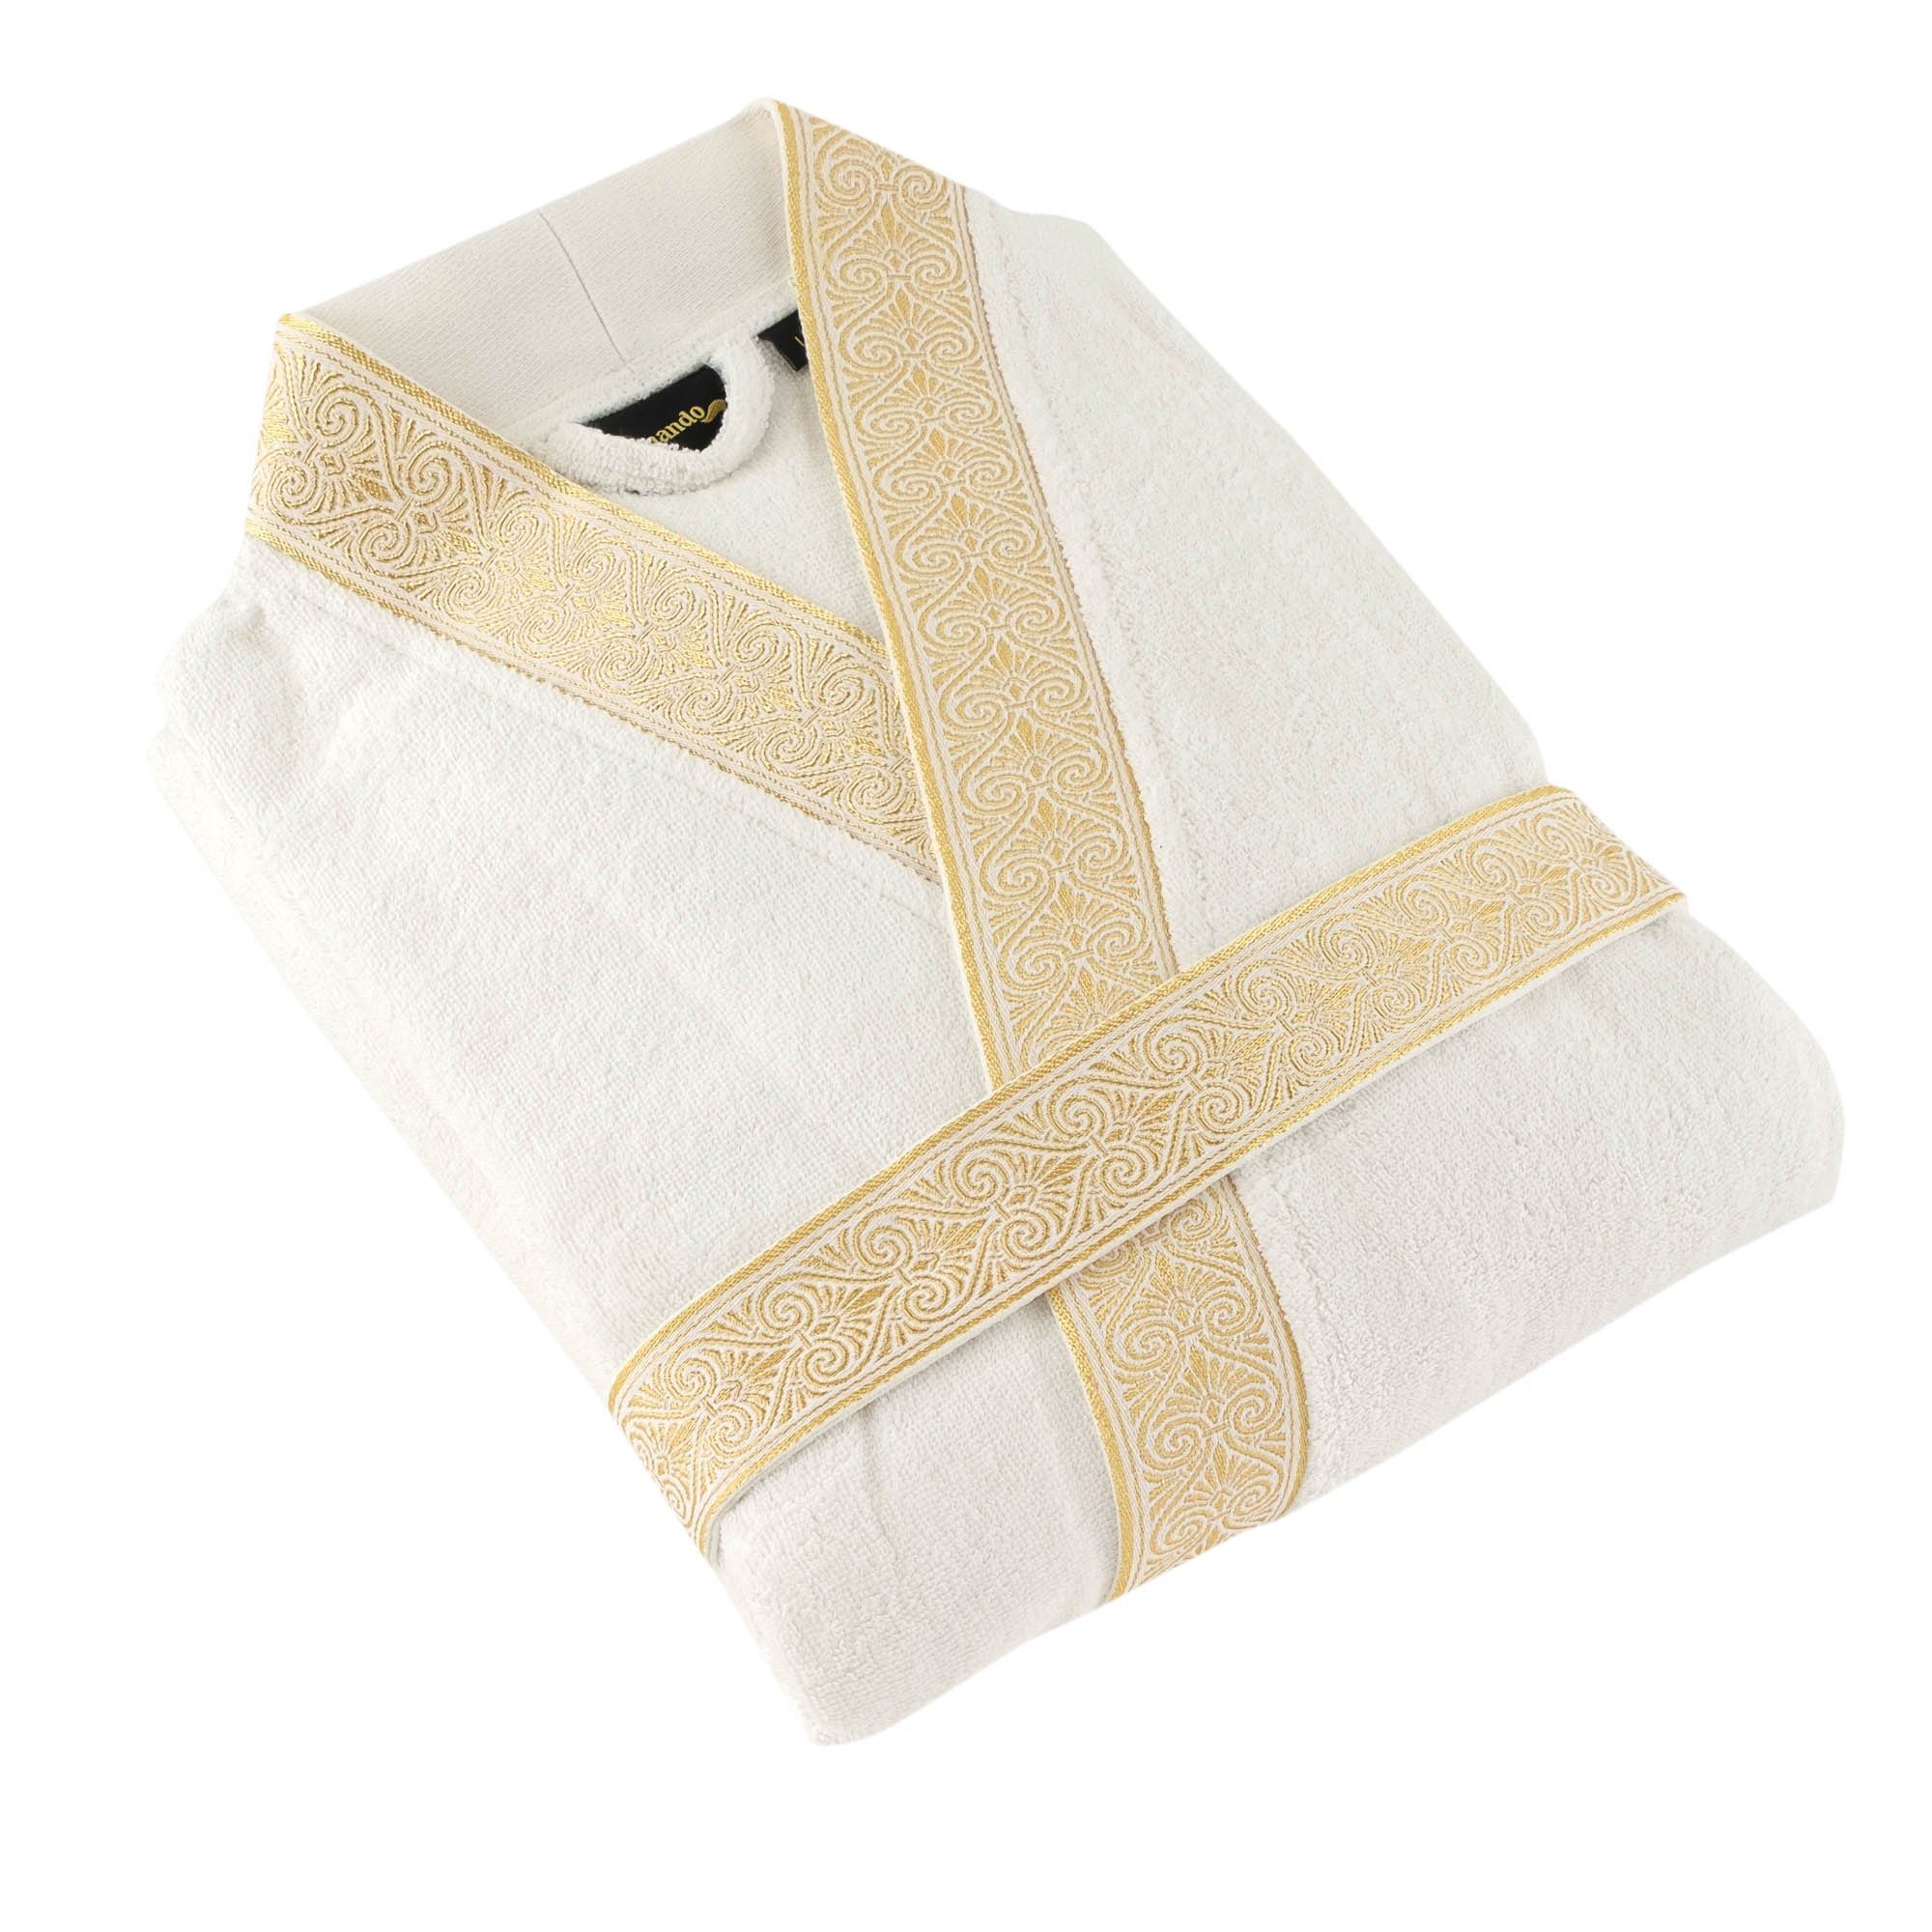 Baumwolle, Bindegürtel, Geschenkverpackung S, Optik, Weiß, 100% gestickte Gold Bademantel mit Kimono-Kragen, Blende Aymando Ornament